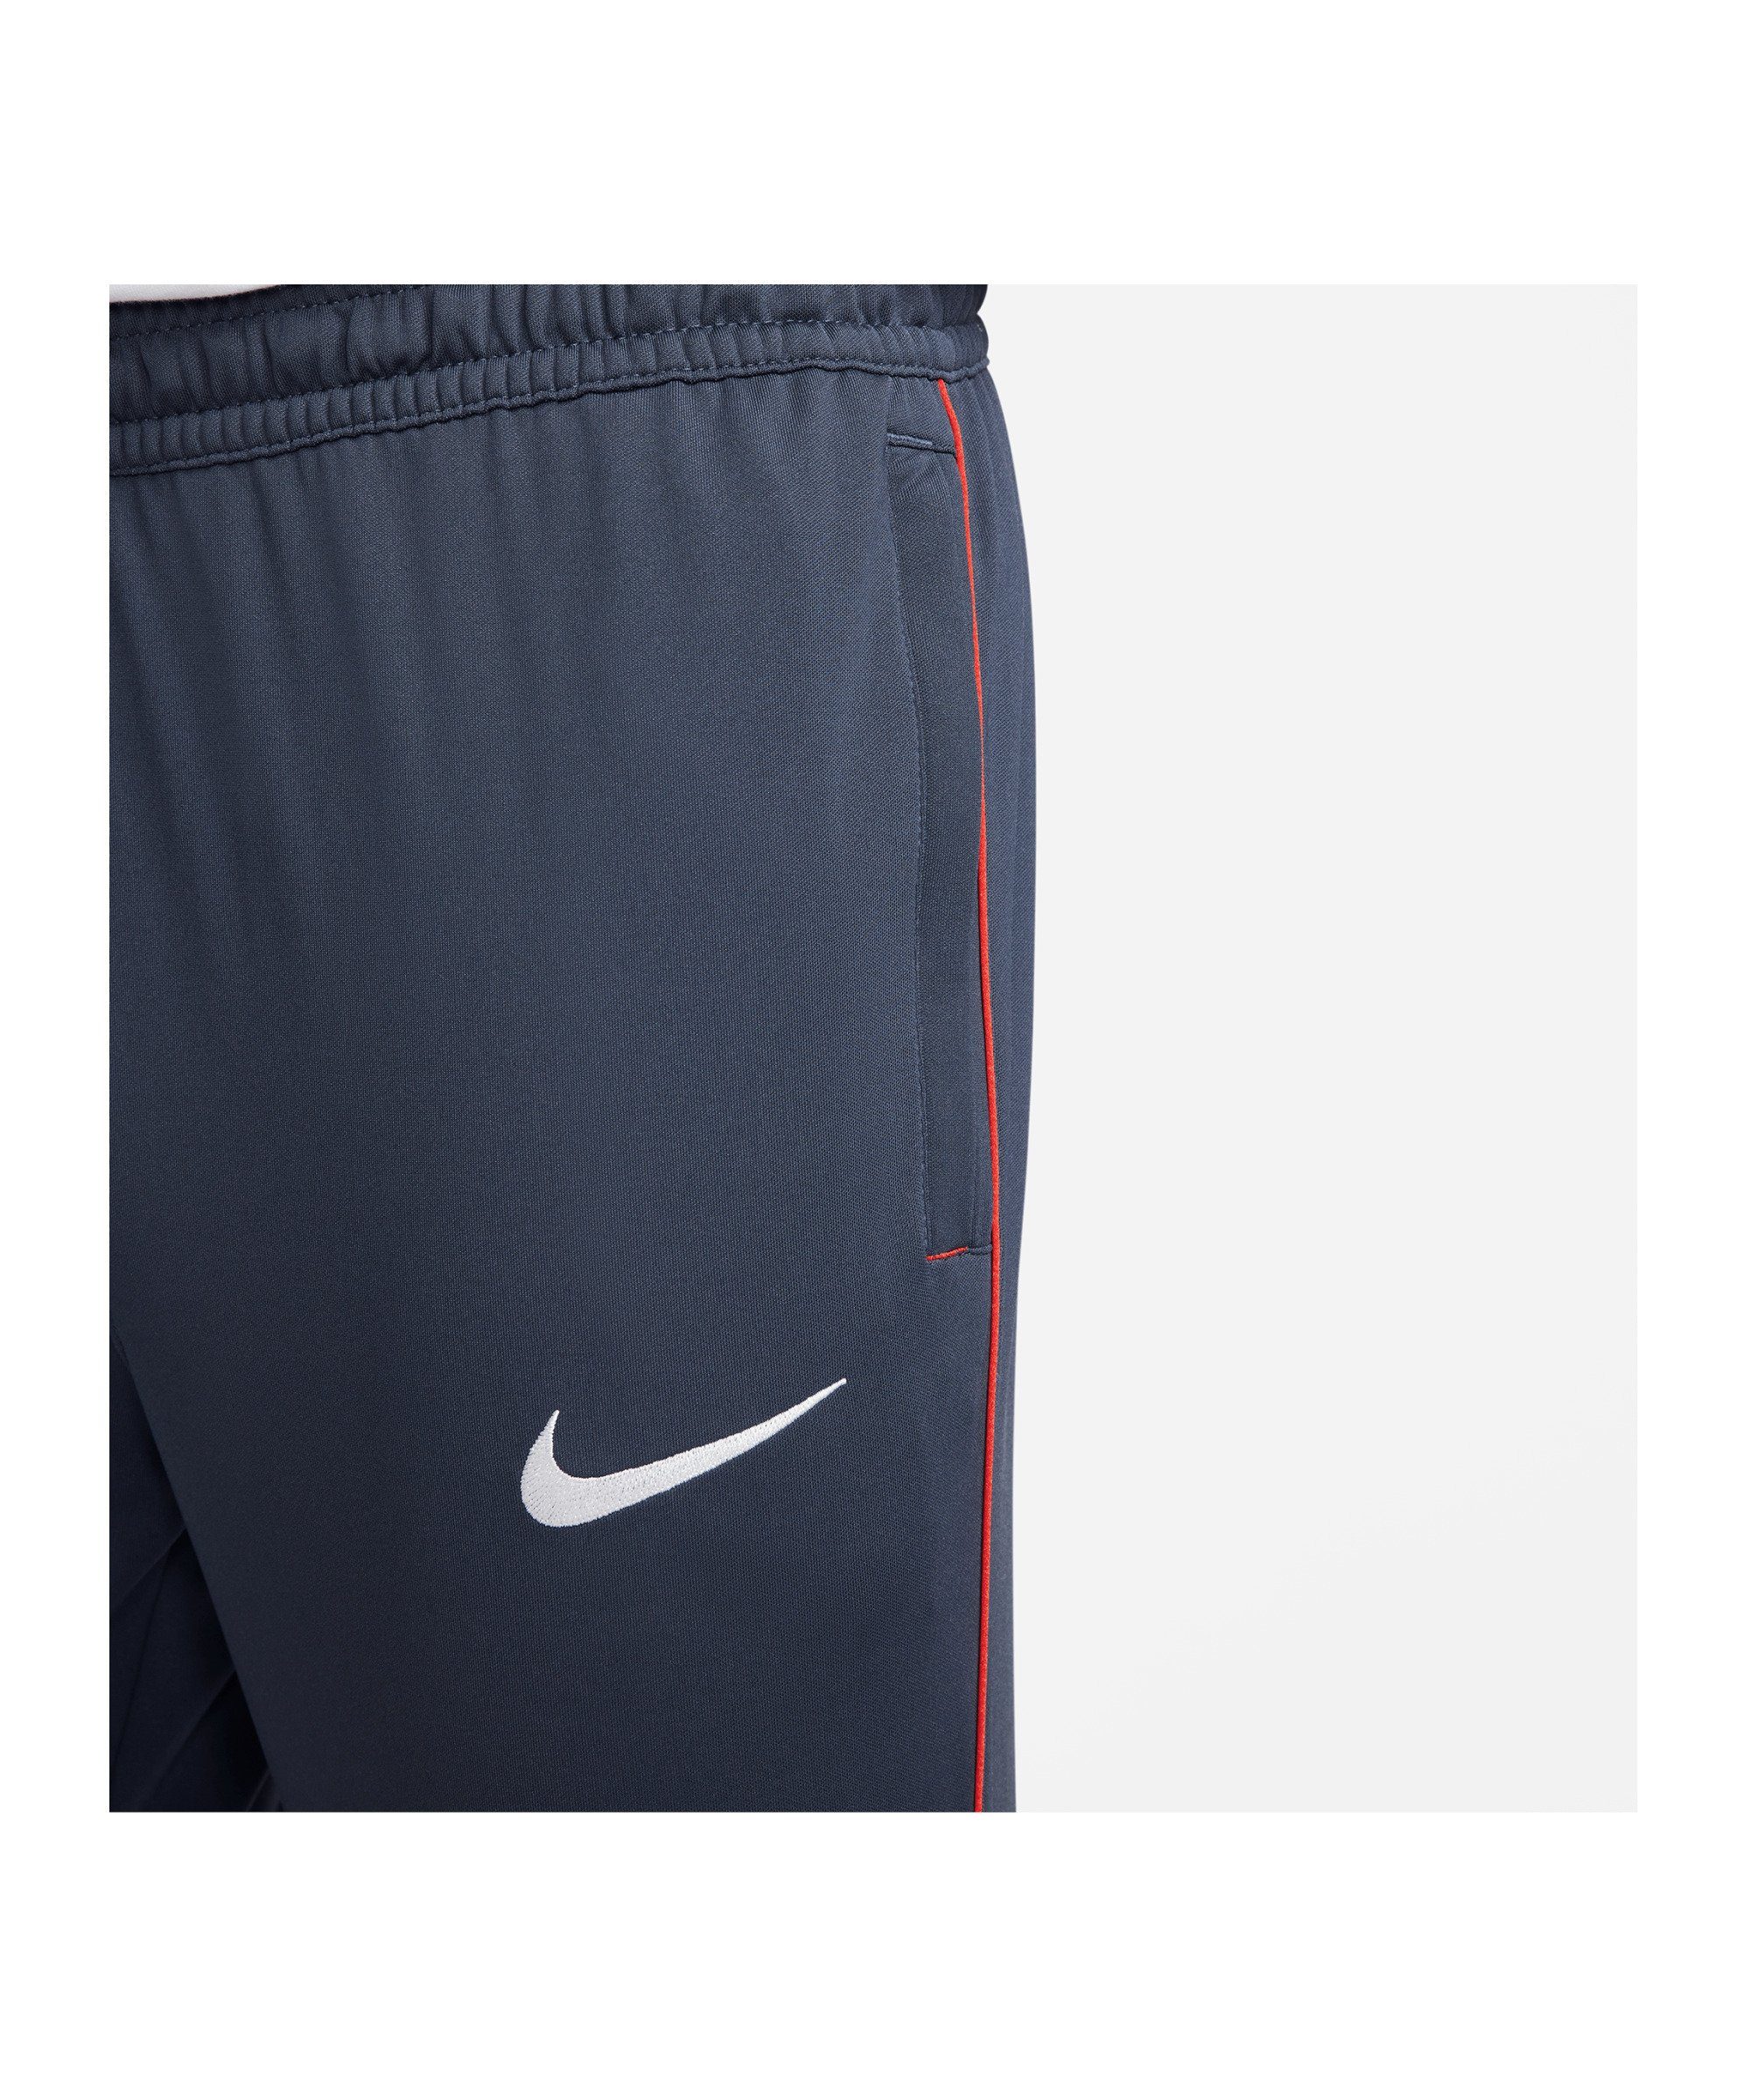 F.C. blaurotweiss Nike Hose Soccer Libero Sportswear Jogginghose